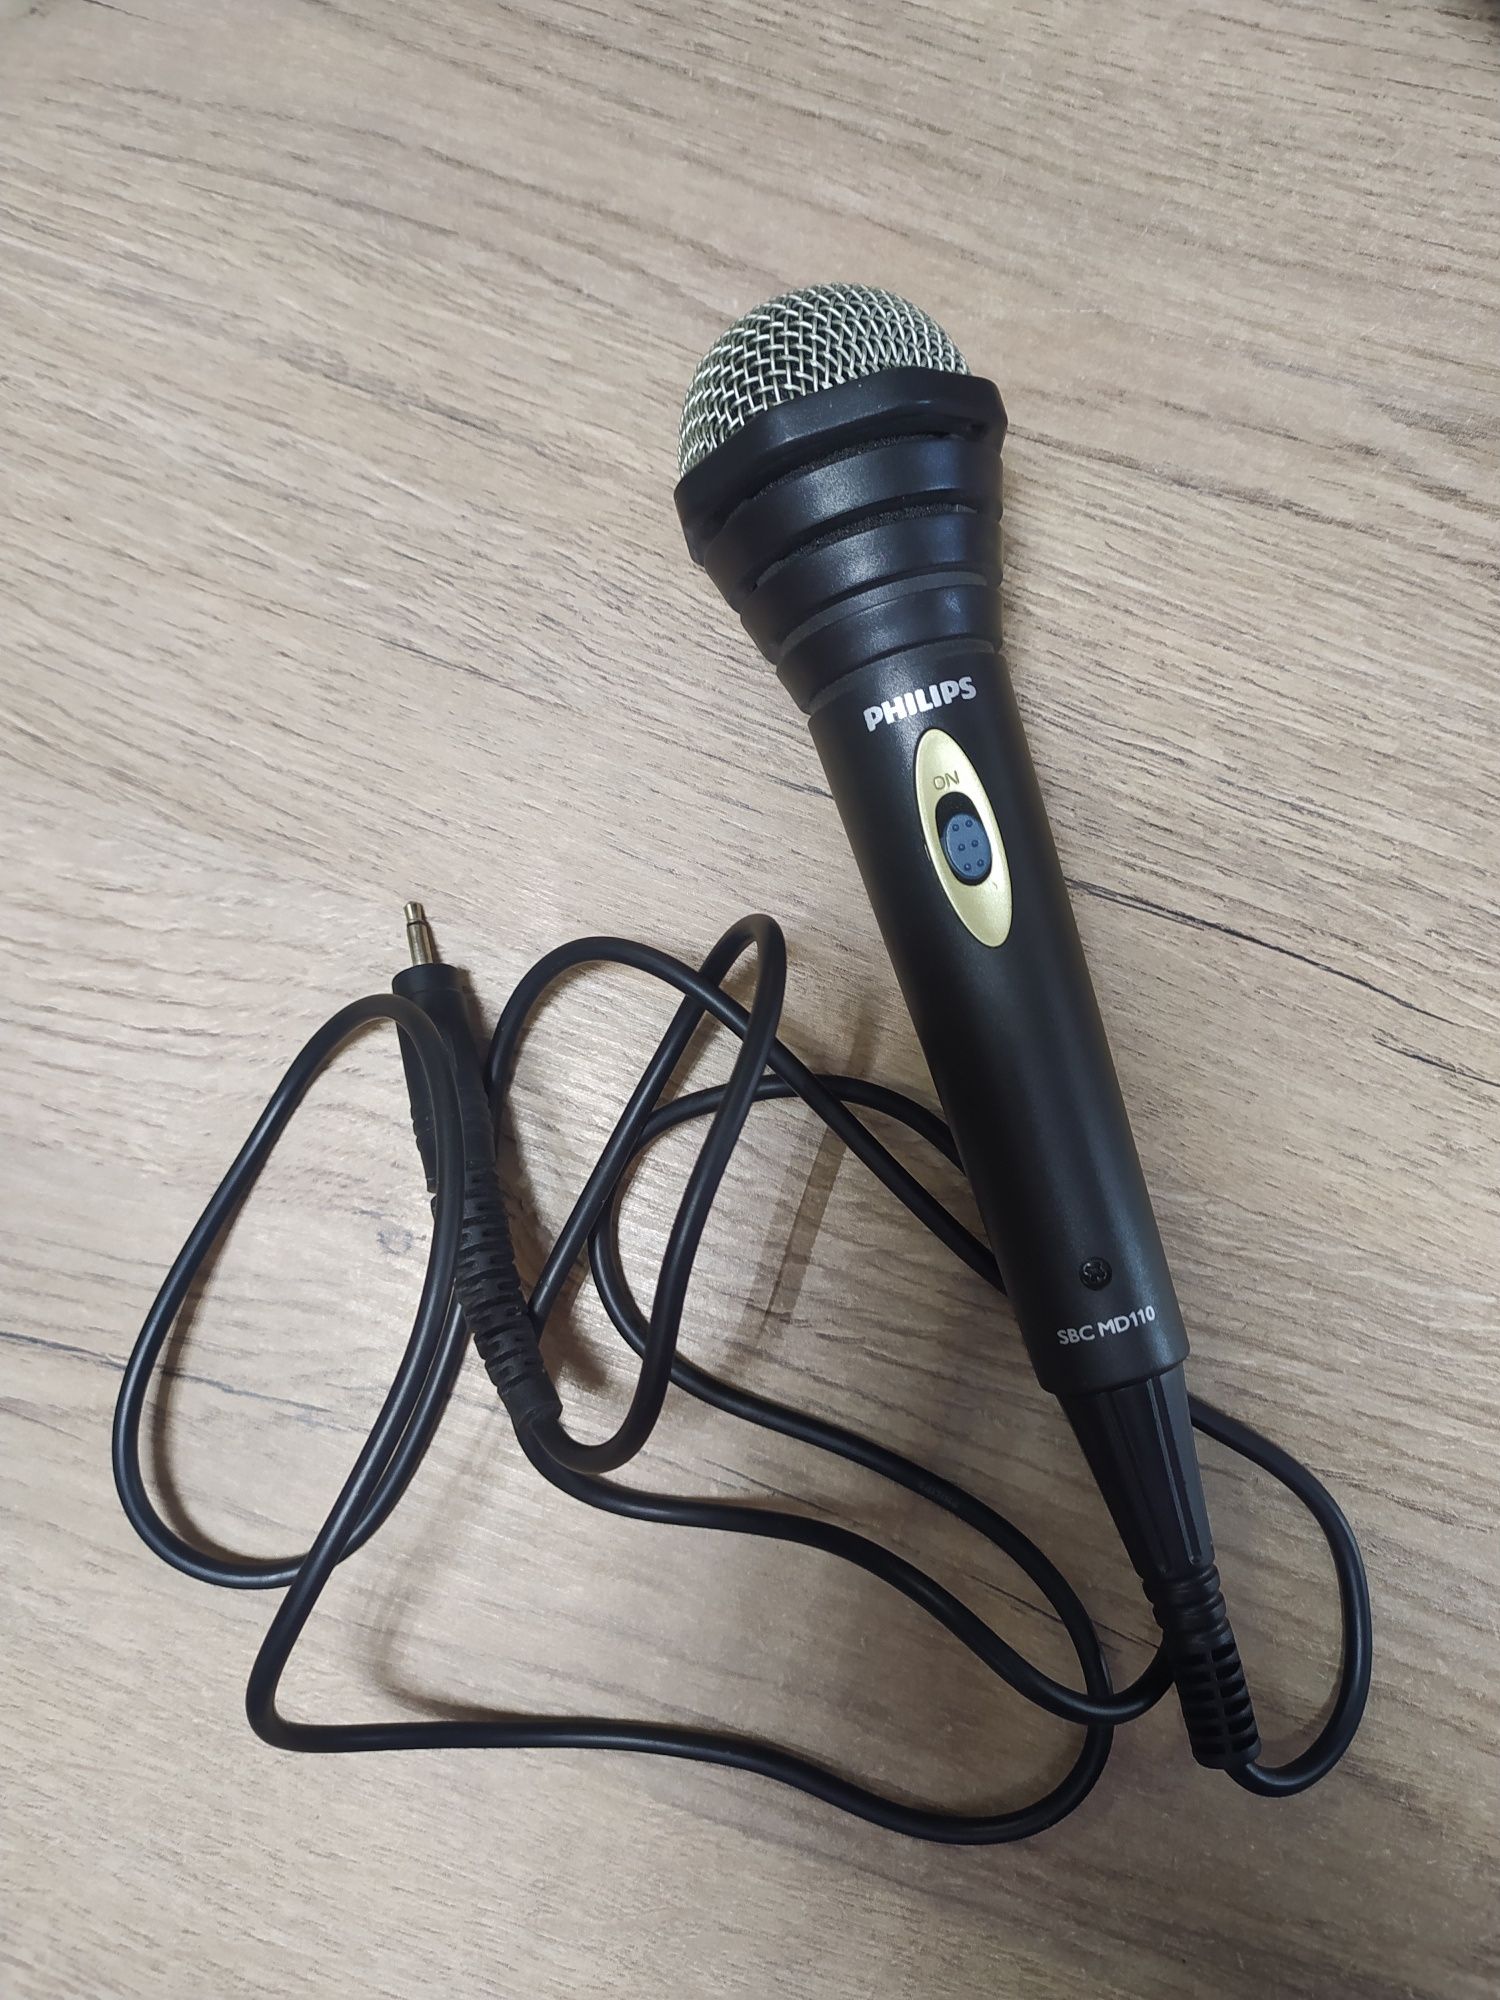 Микрофон динамический Philips SBC-MD110 как новый